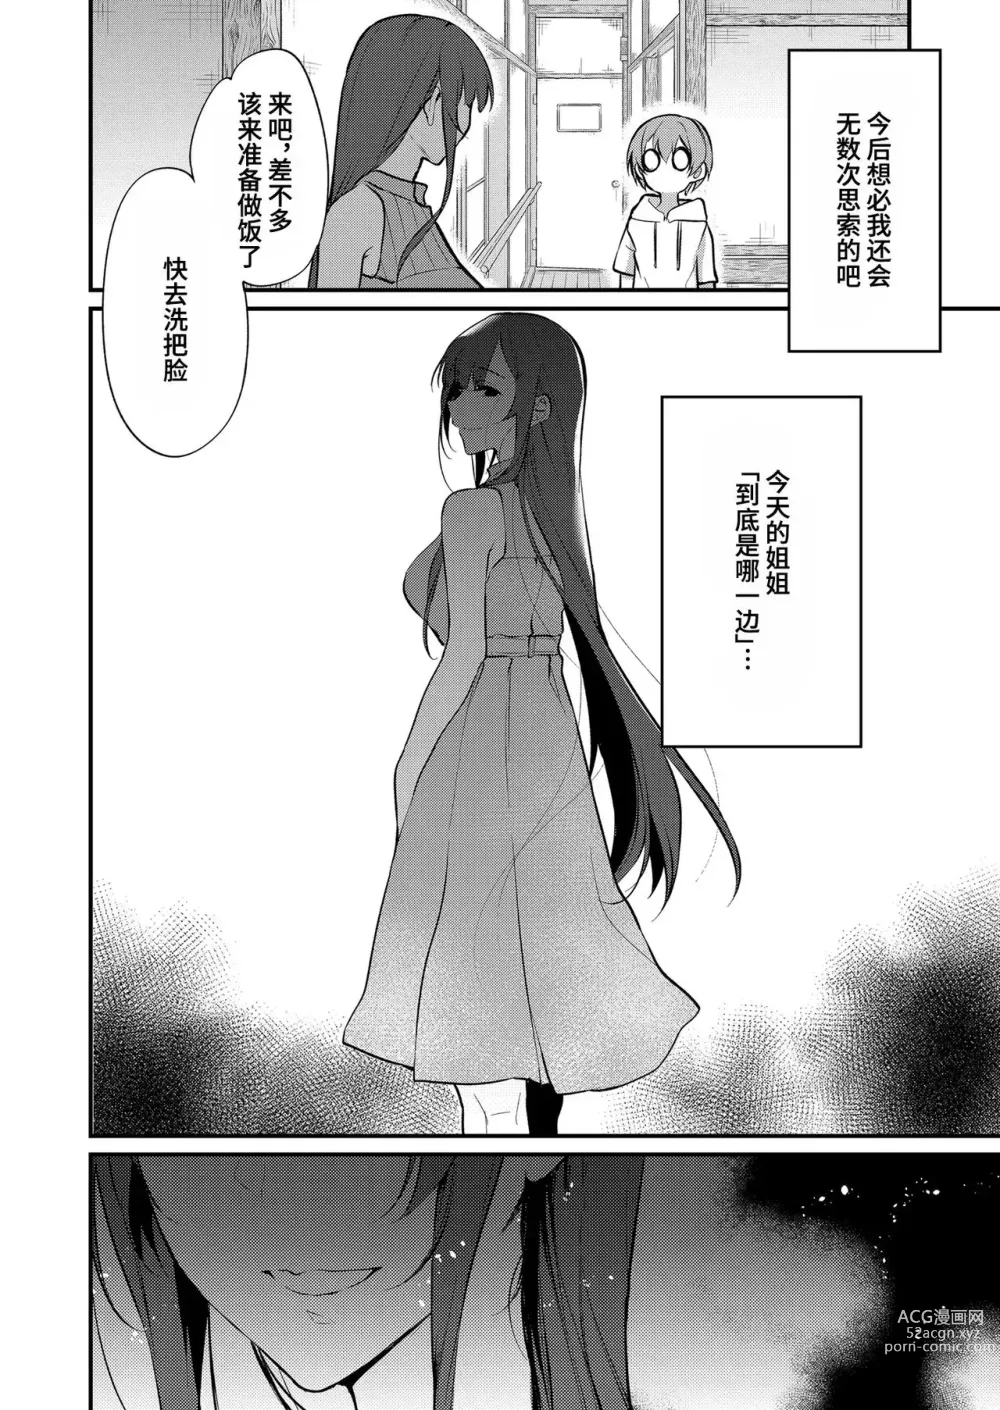 Page 289 of doujinshi 姉なるもの